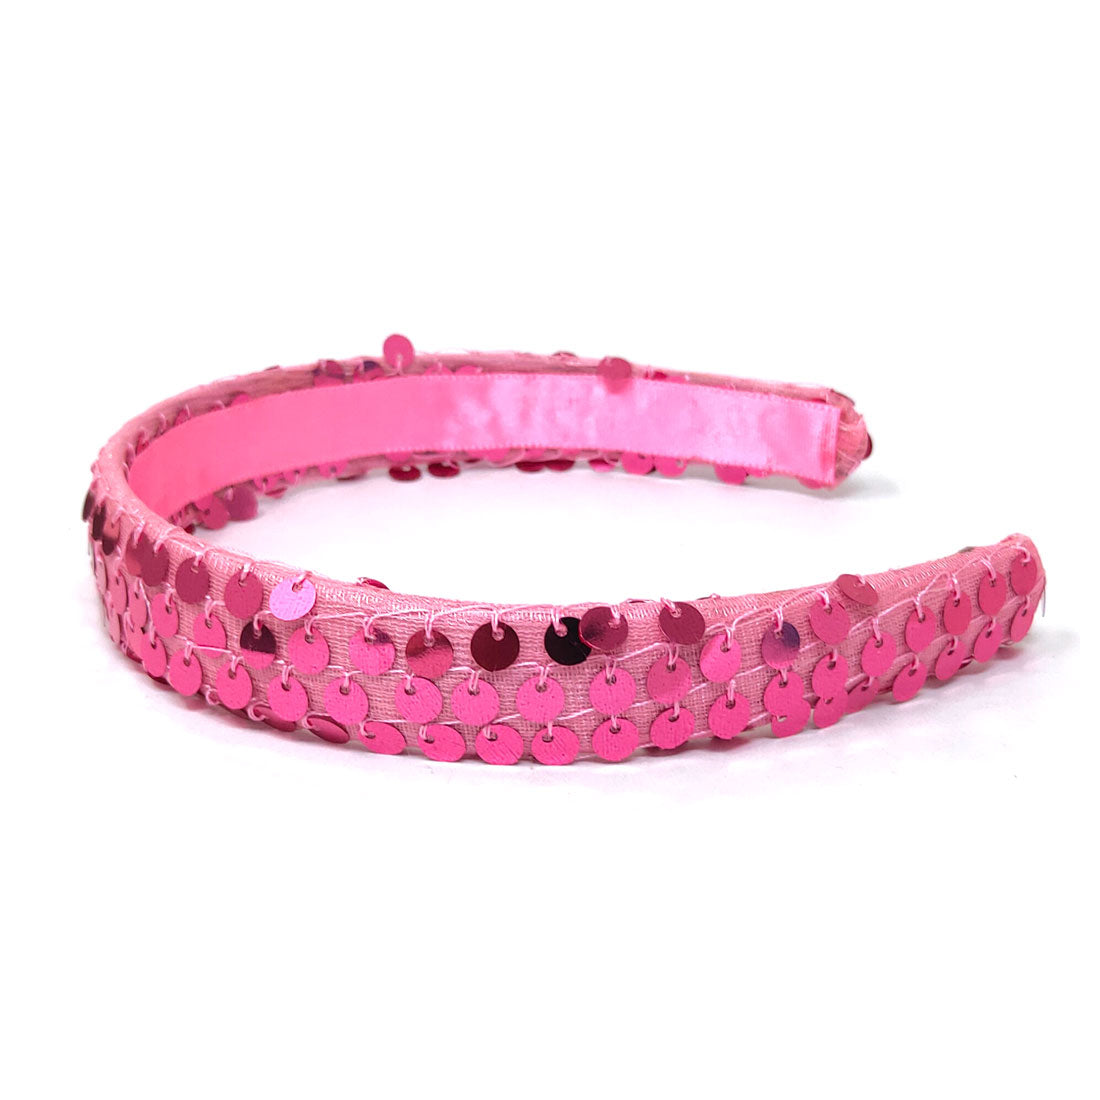 Anokhi Ada Handmade Fabric Stylish Hairband/Headband for Girls and Women (Baby Pink)-04-21H